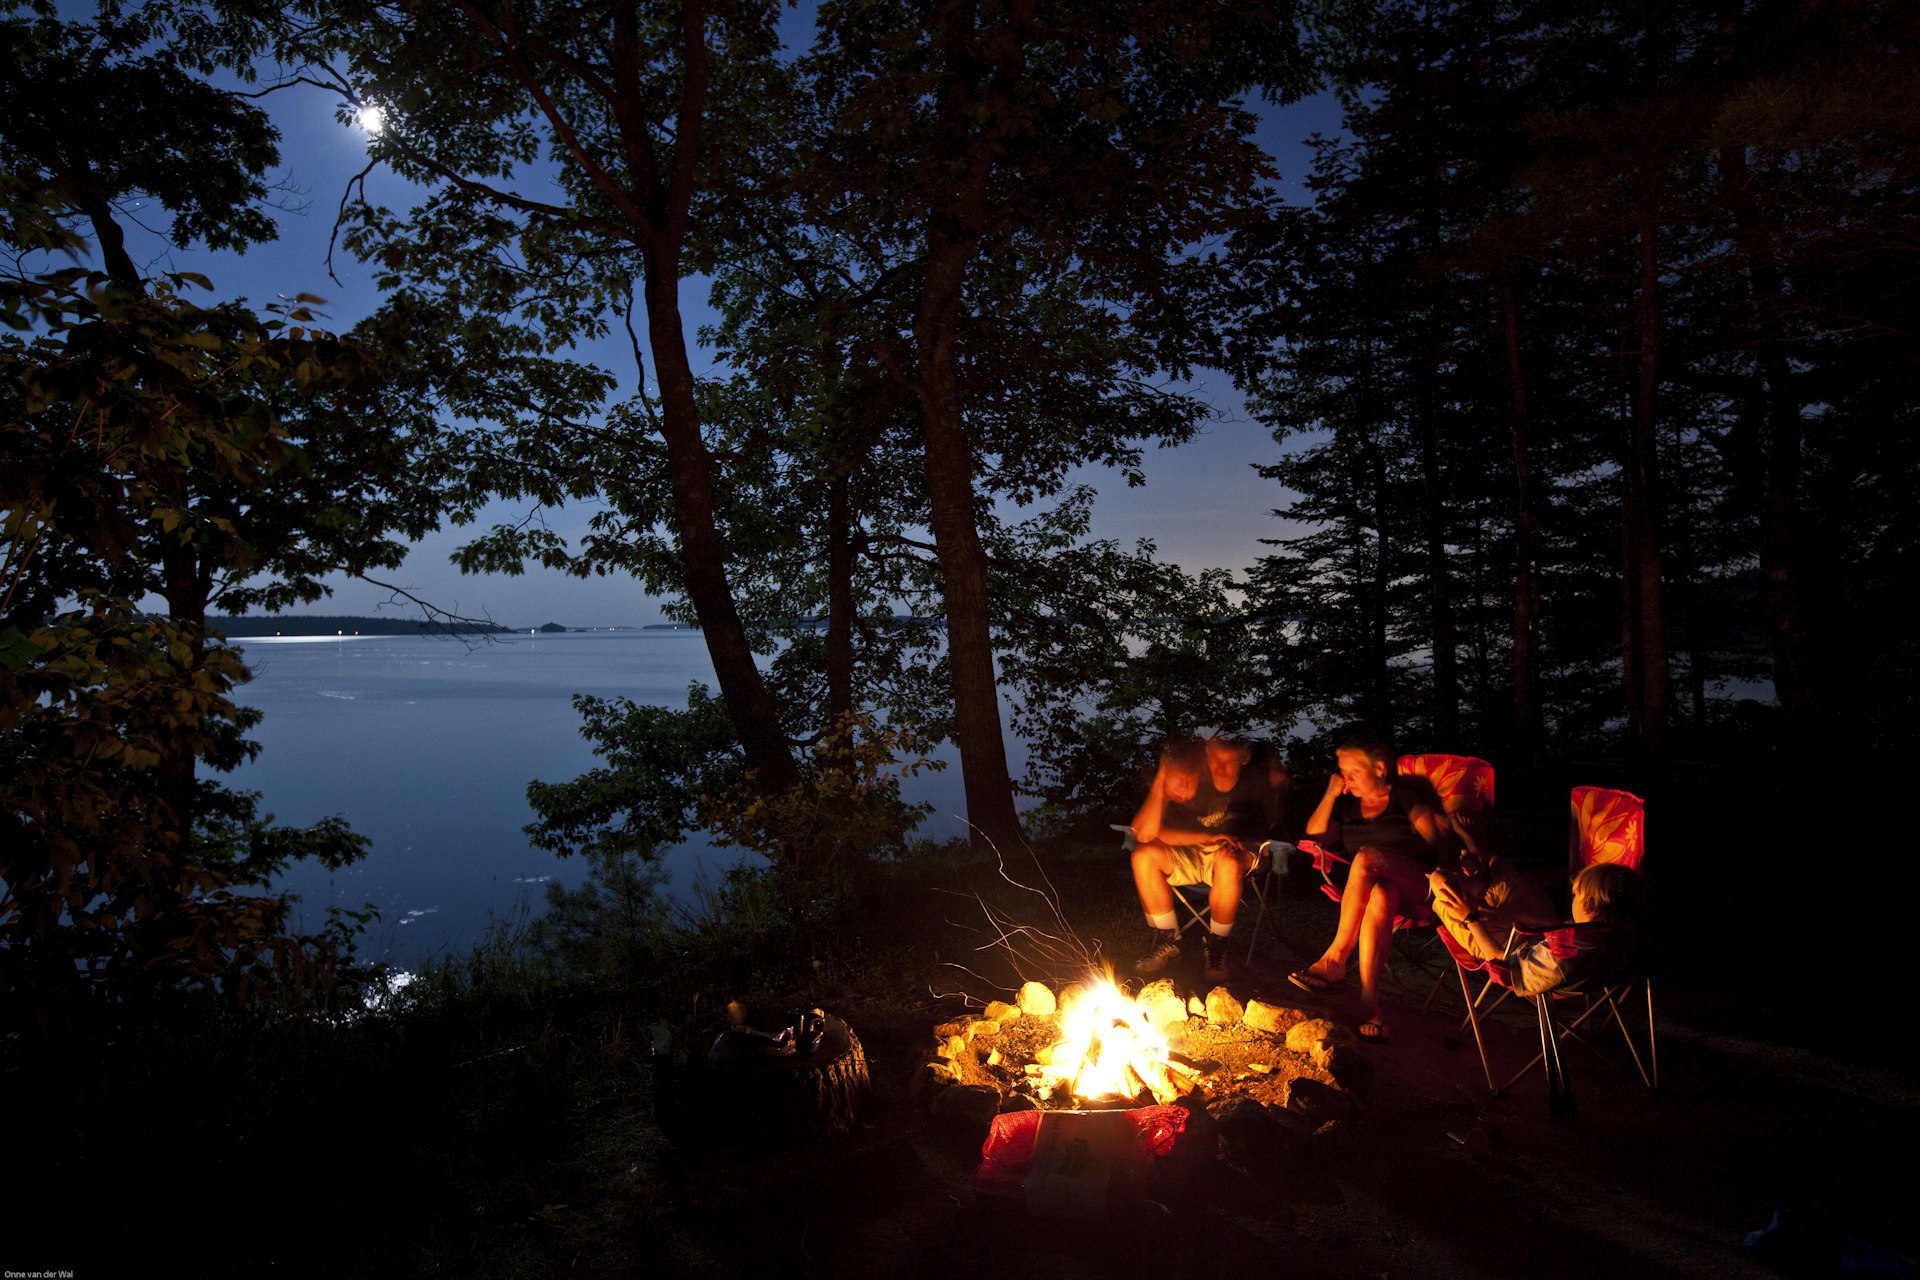 A family around a campfire by evening, Maine, USA